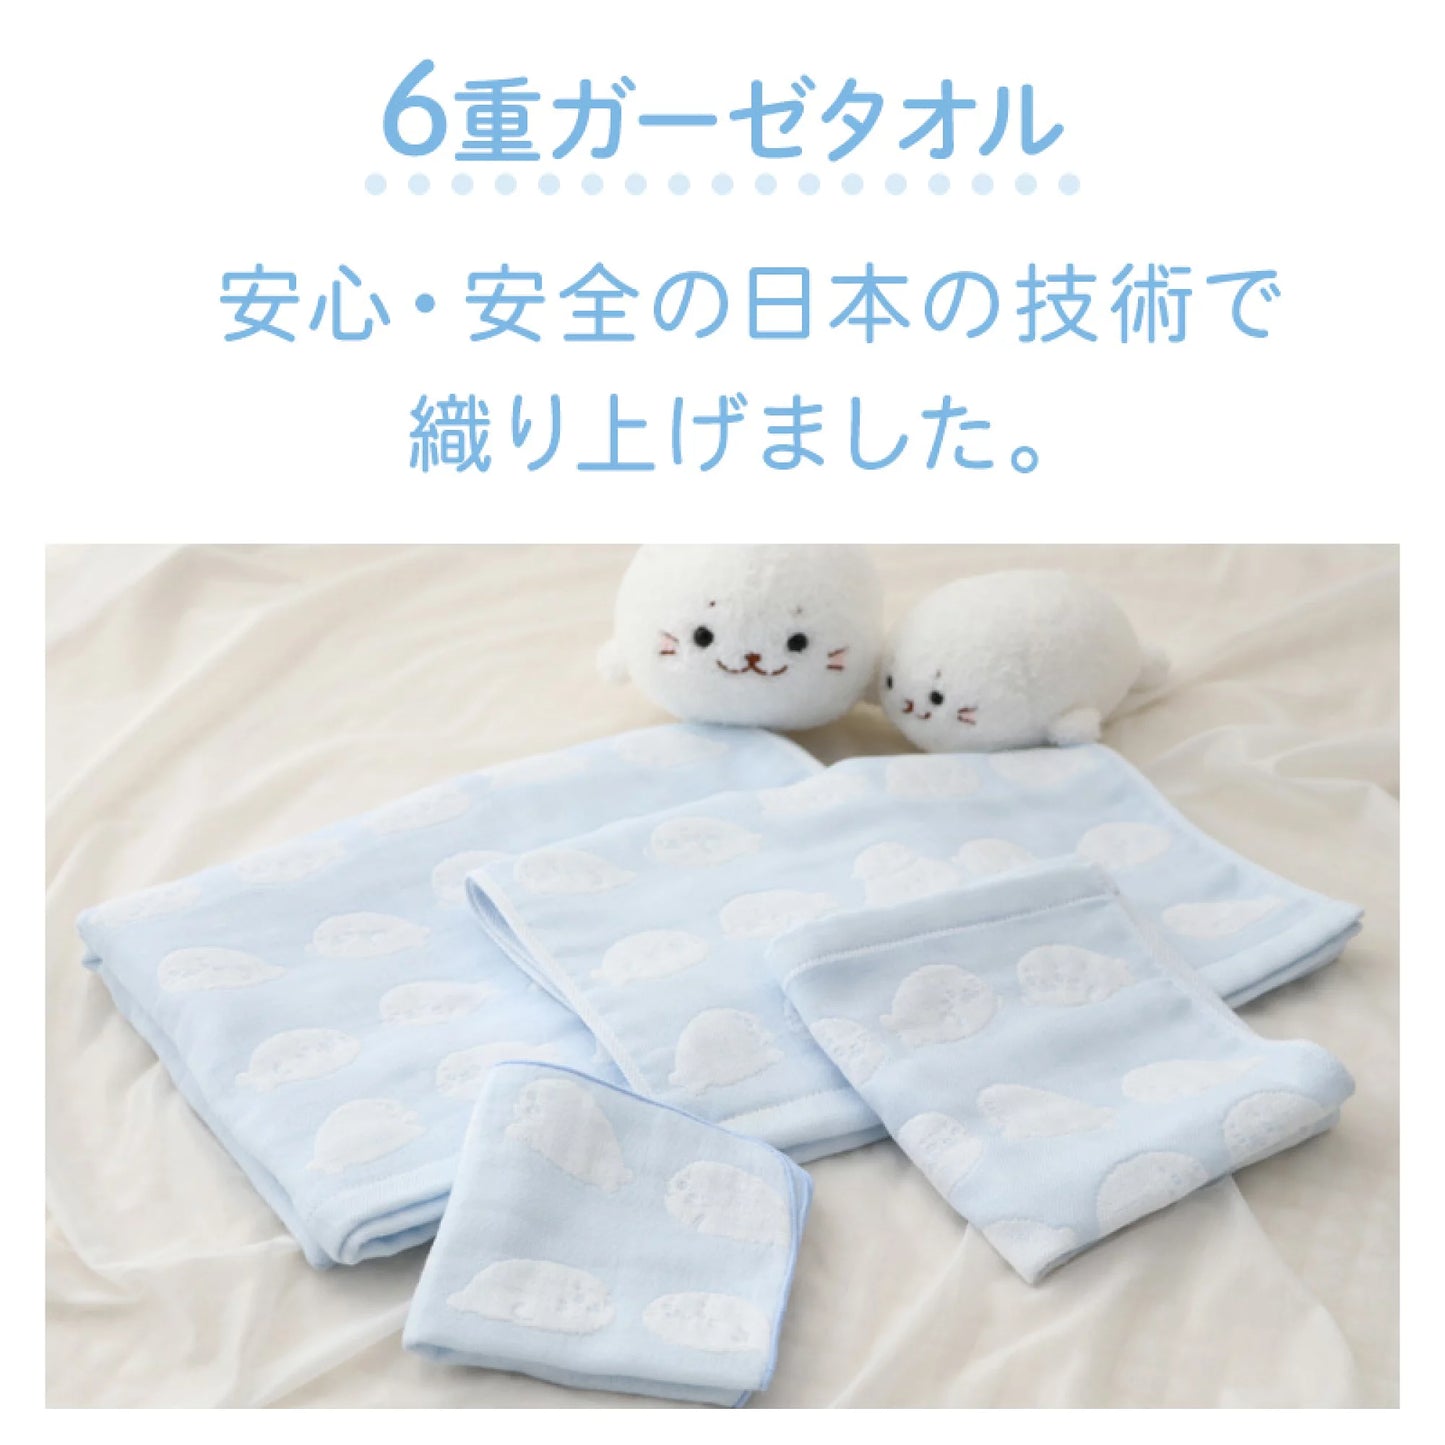 日本製Sirotan六重紗布毛巾 【趴趴款】